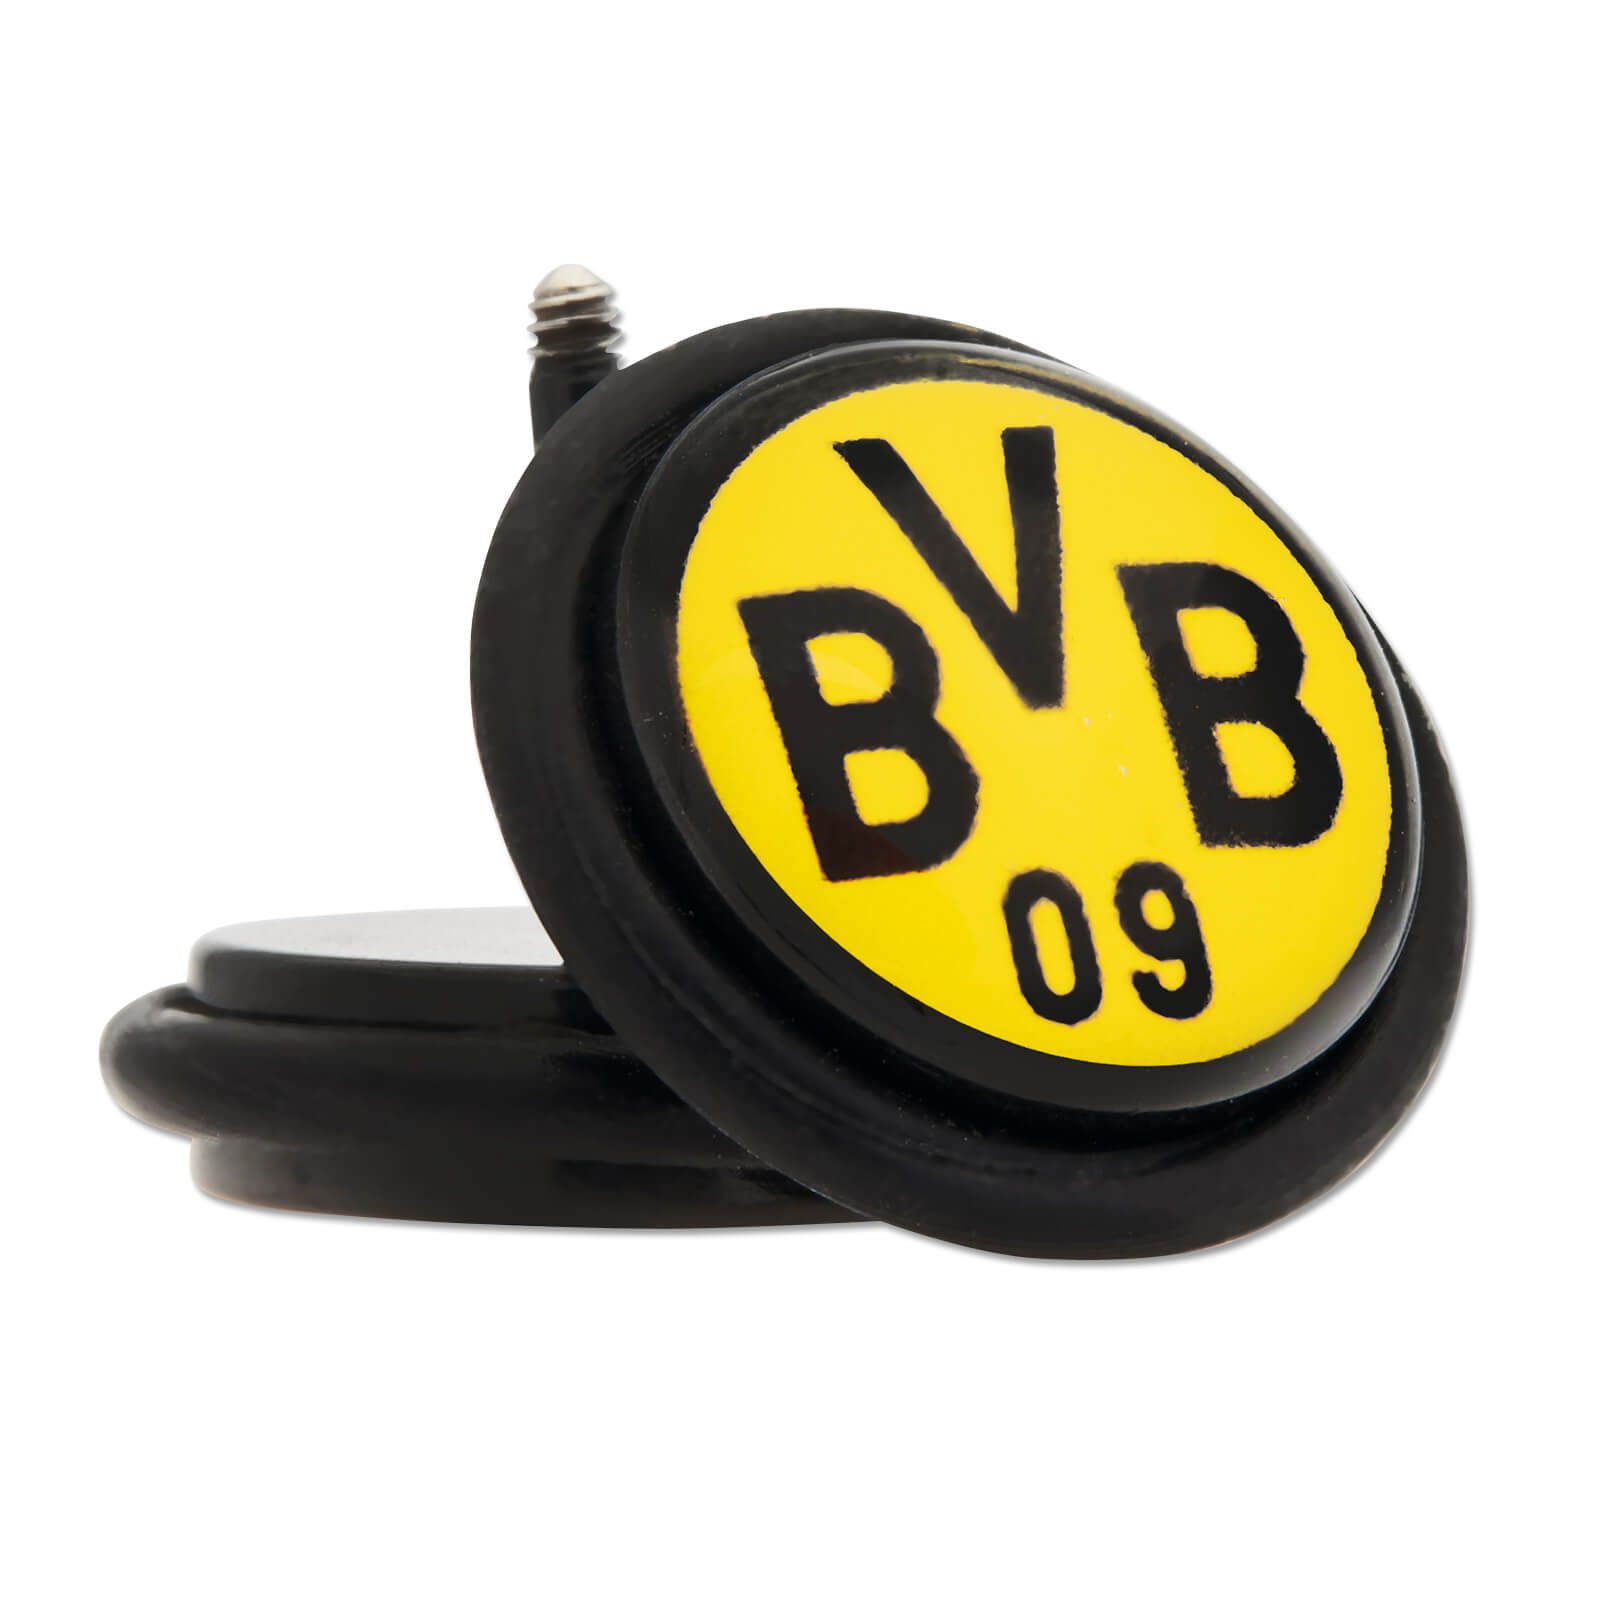 BVB Fake Plug